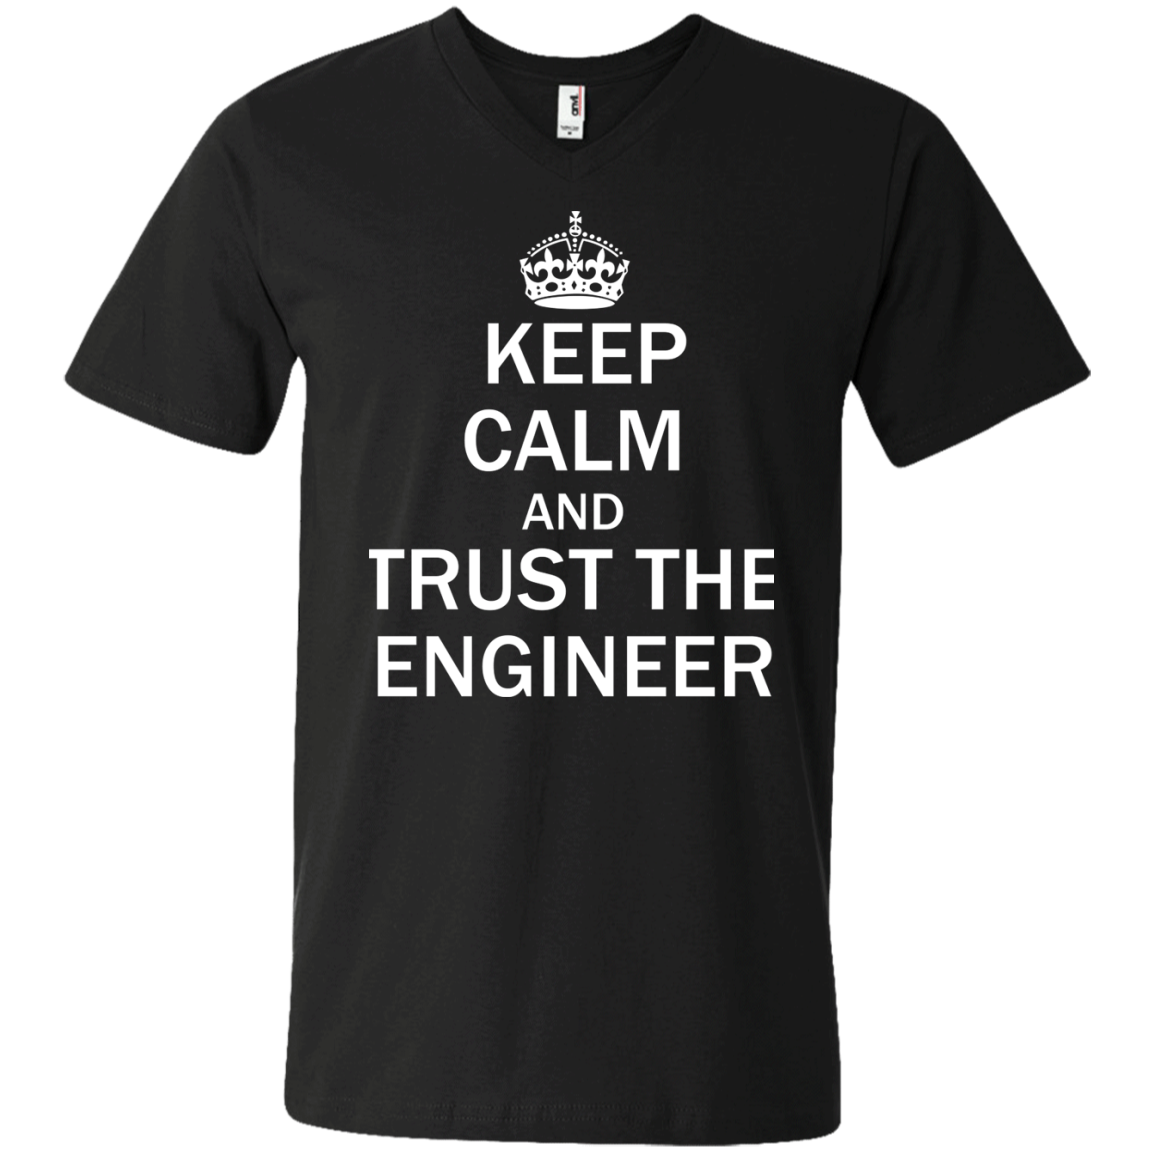 Mantenga la calma y confíe en el ingeniero